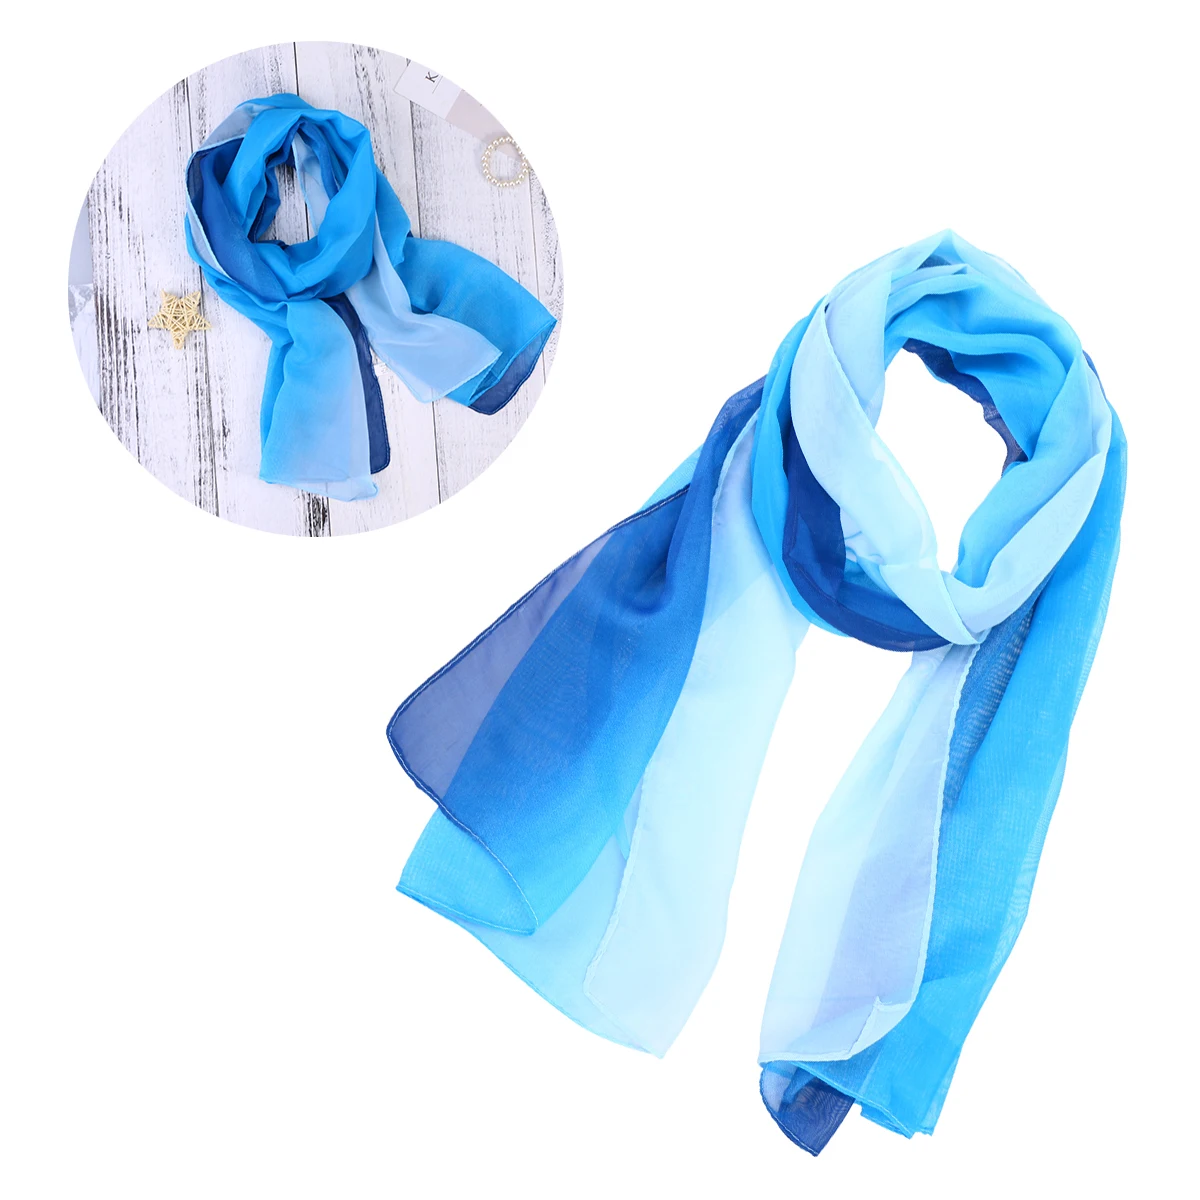 Уникальные женские элегантные шарфы шифоновый шарф цвета градиент(синий и белый